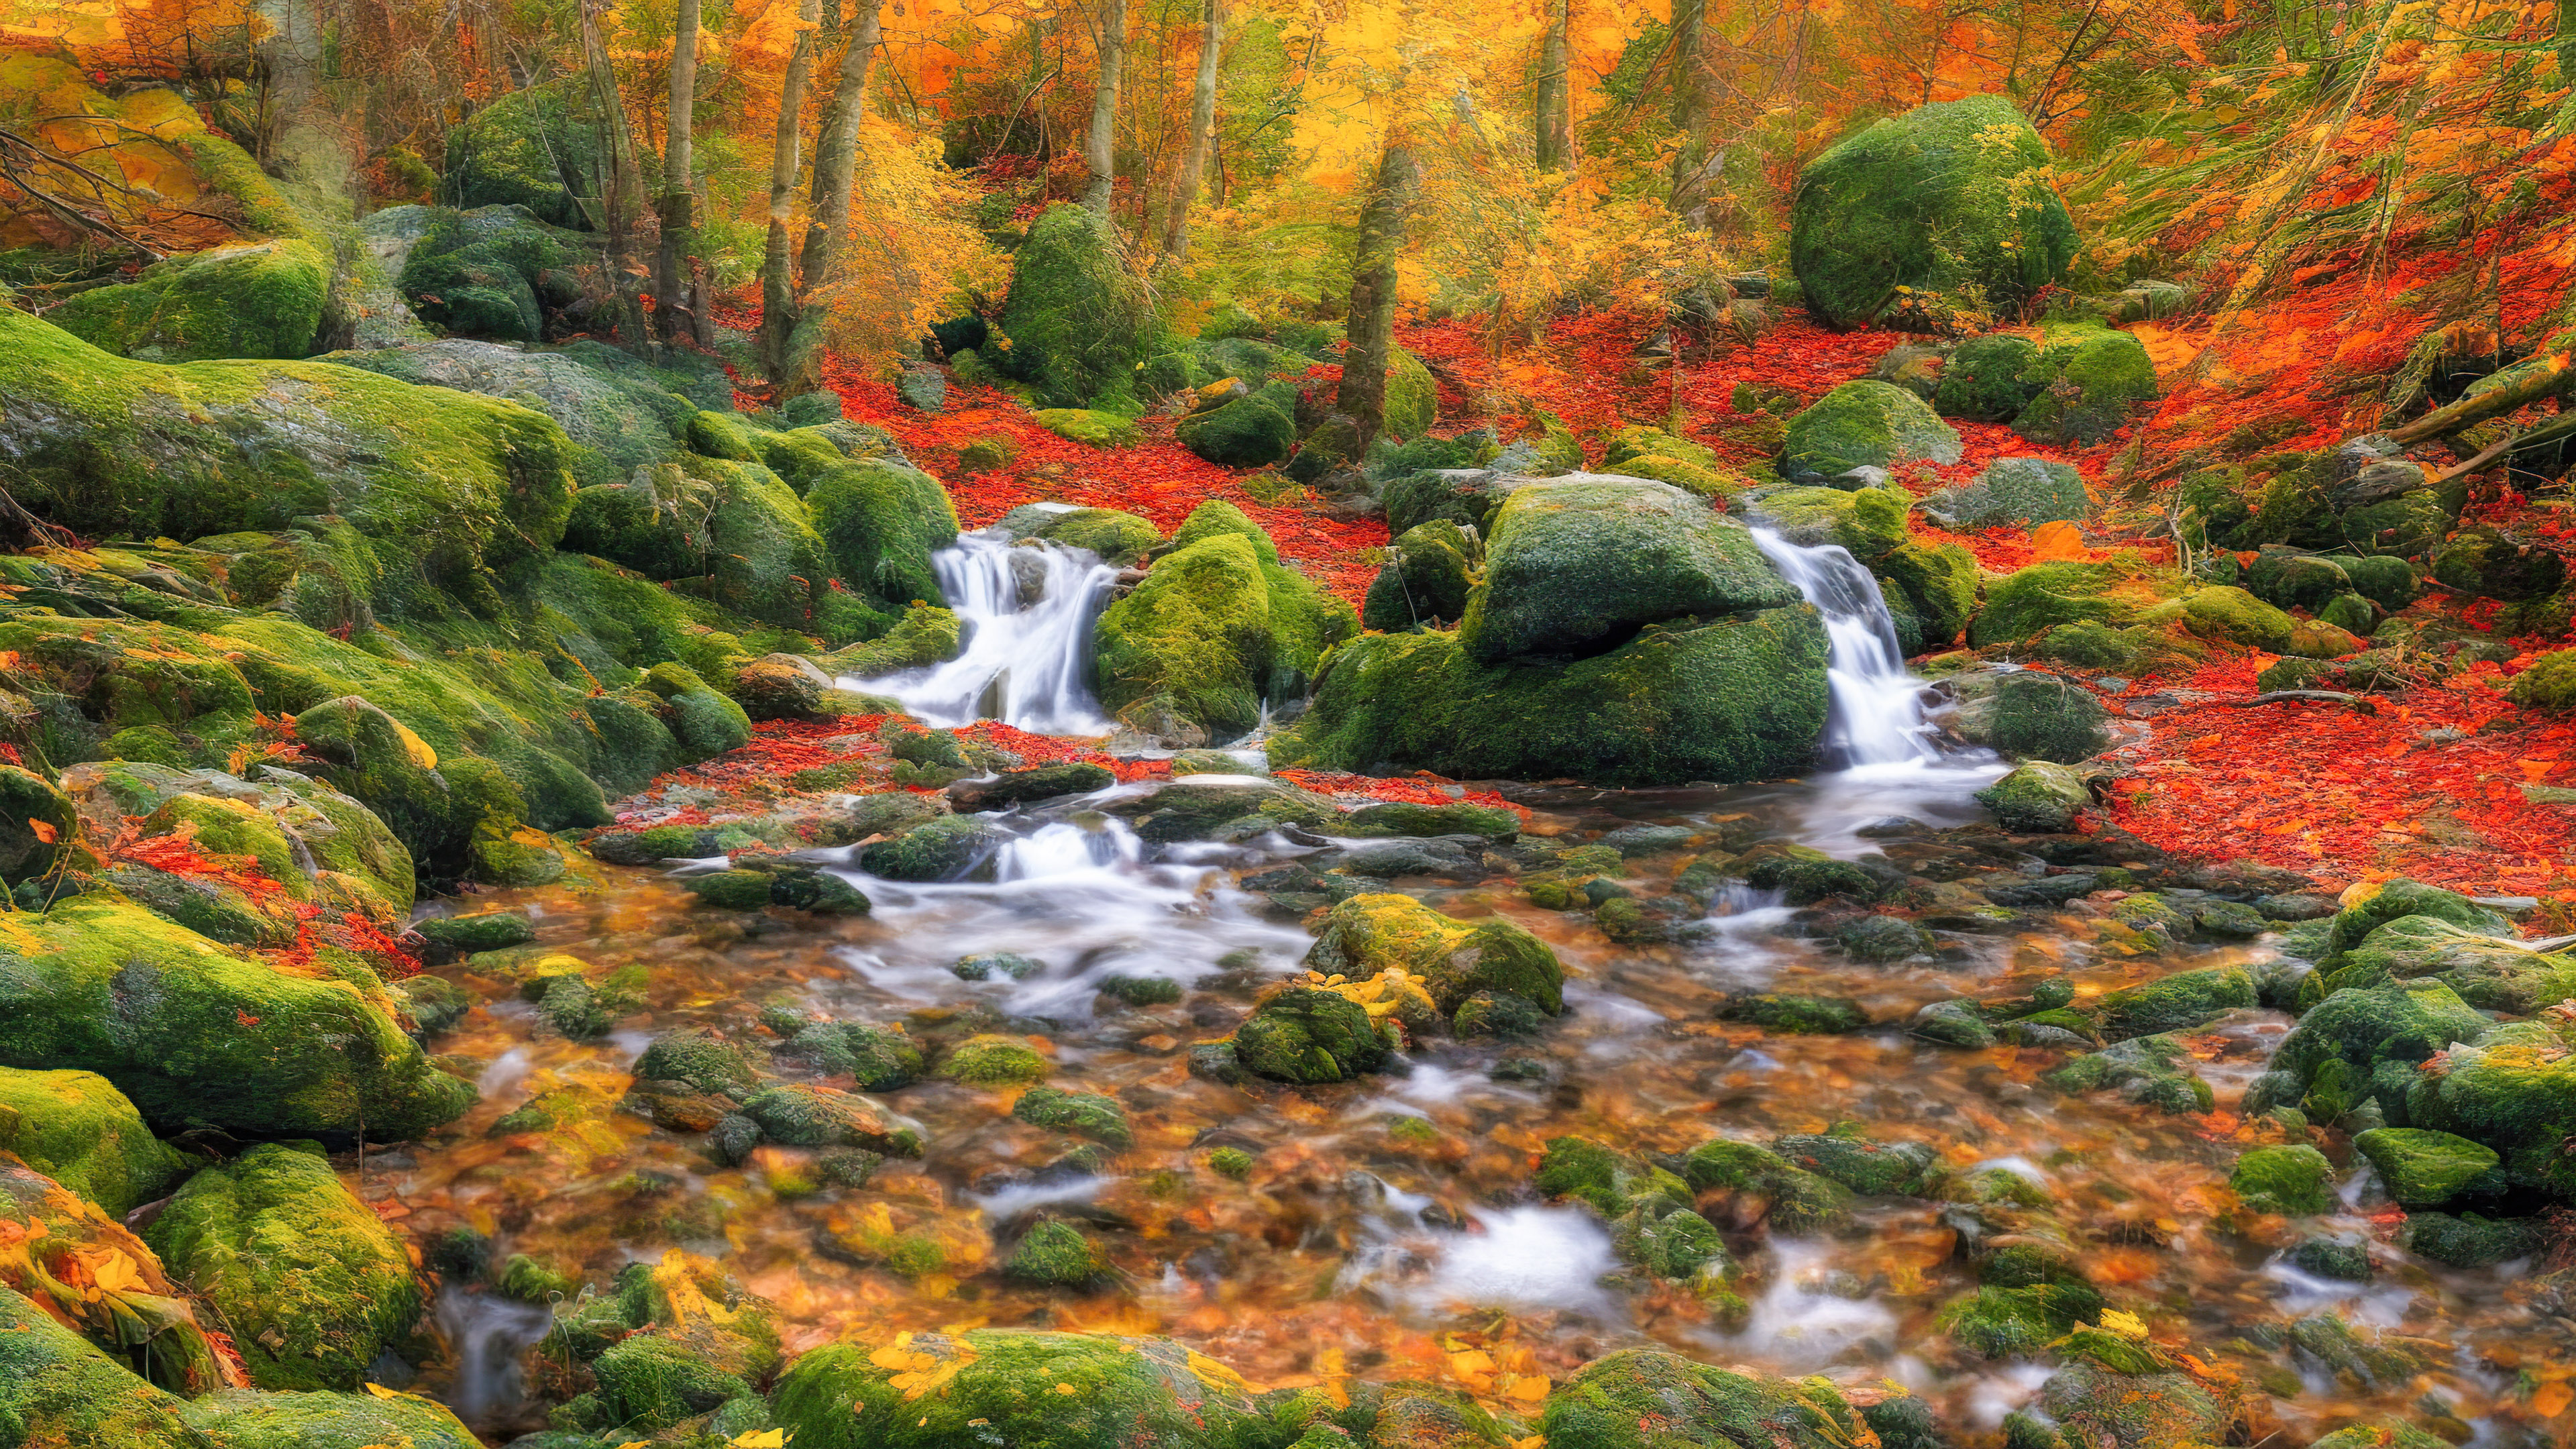 Vivez la tranquillité avec notre fond d'écran PC de paysage, illustrant une scène de forêt paisible avec un ruisseau sinueux, entouré d'un feuillage d'automne vibrant.